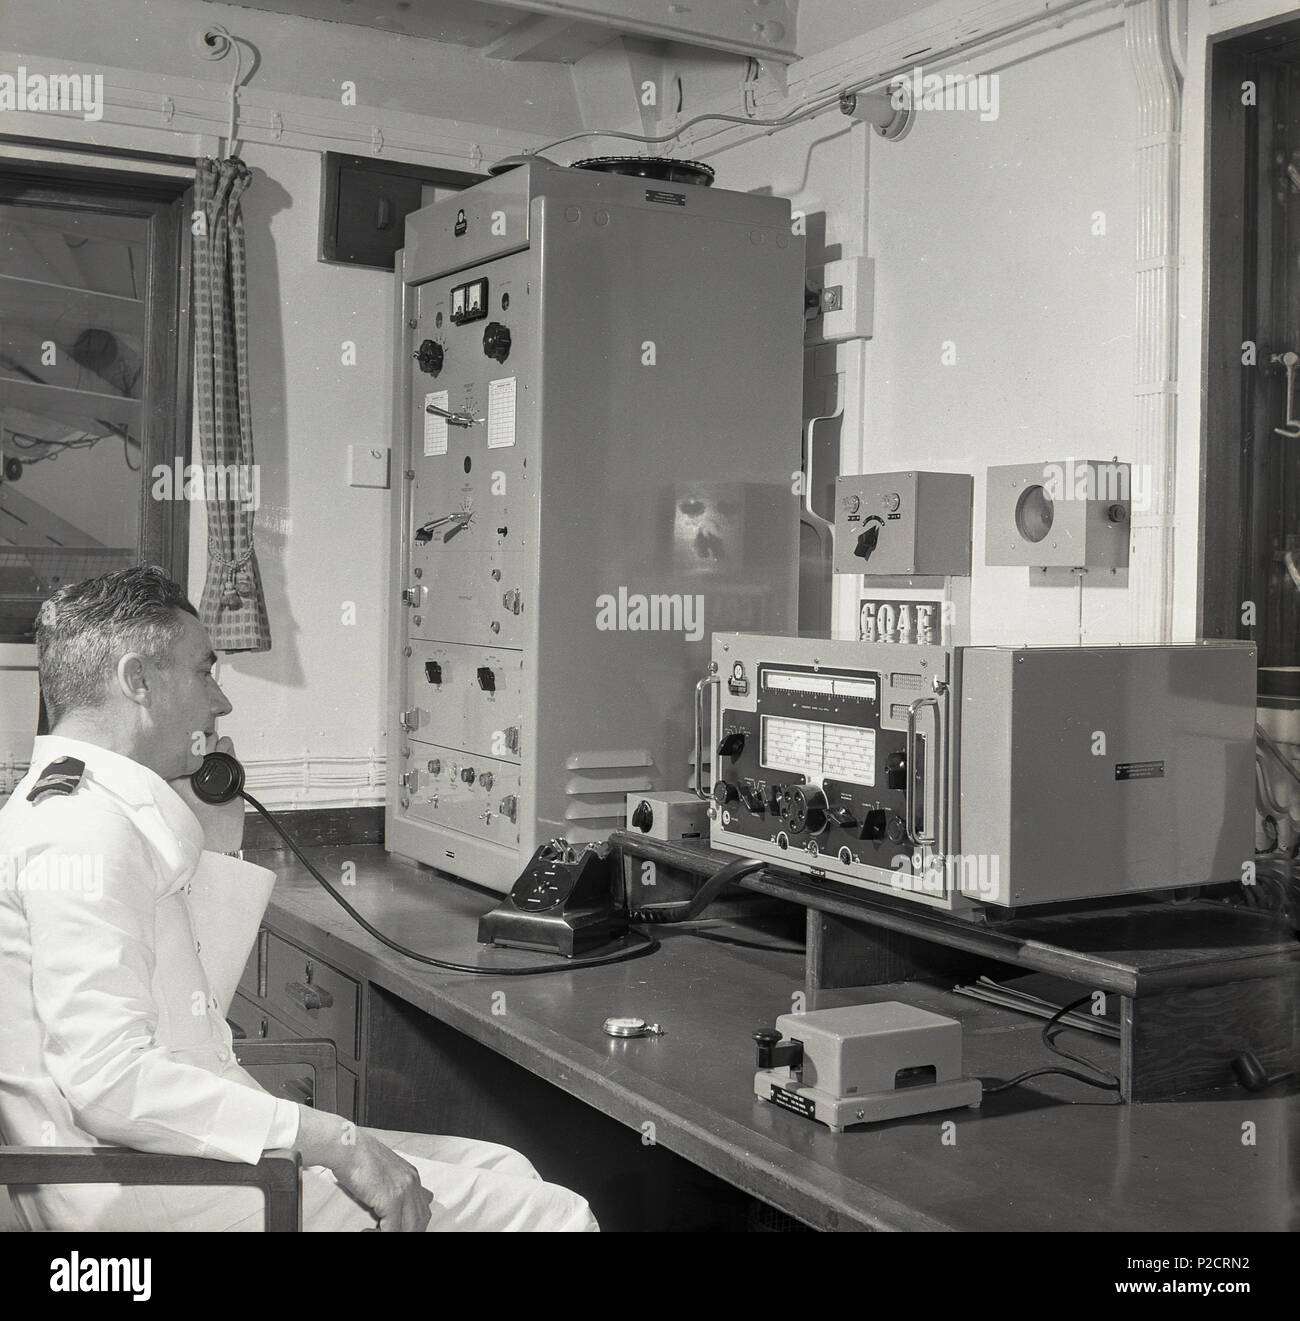 1950, historische, auf einem Passagierschiff im Radio Zimmer, ein uniformierter Mann wireless oder Funker an seinem Schreibtisch im Telefon können Sie über die Kommunikationseinrichtungen der Ära. Die primäre Rolle der Operator's war "Sicherheit auf See". Stockfoto